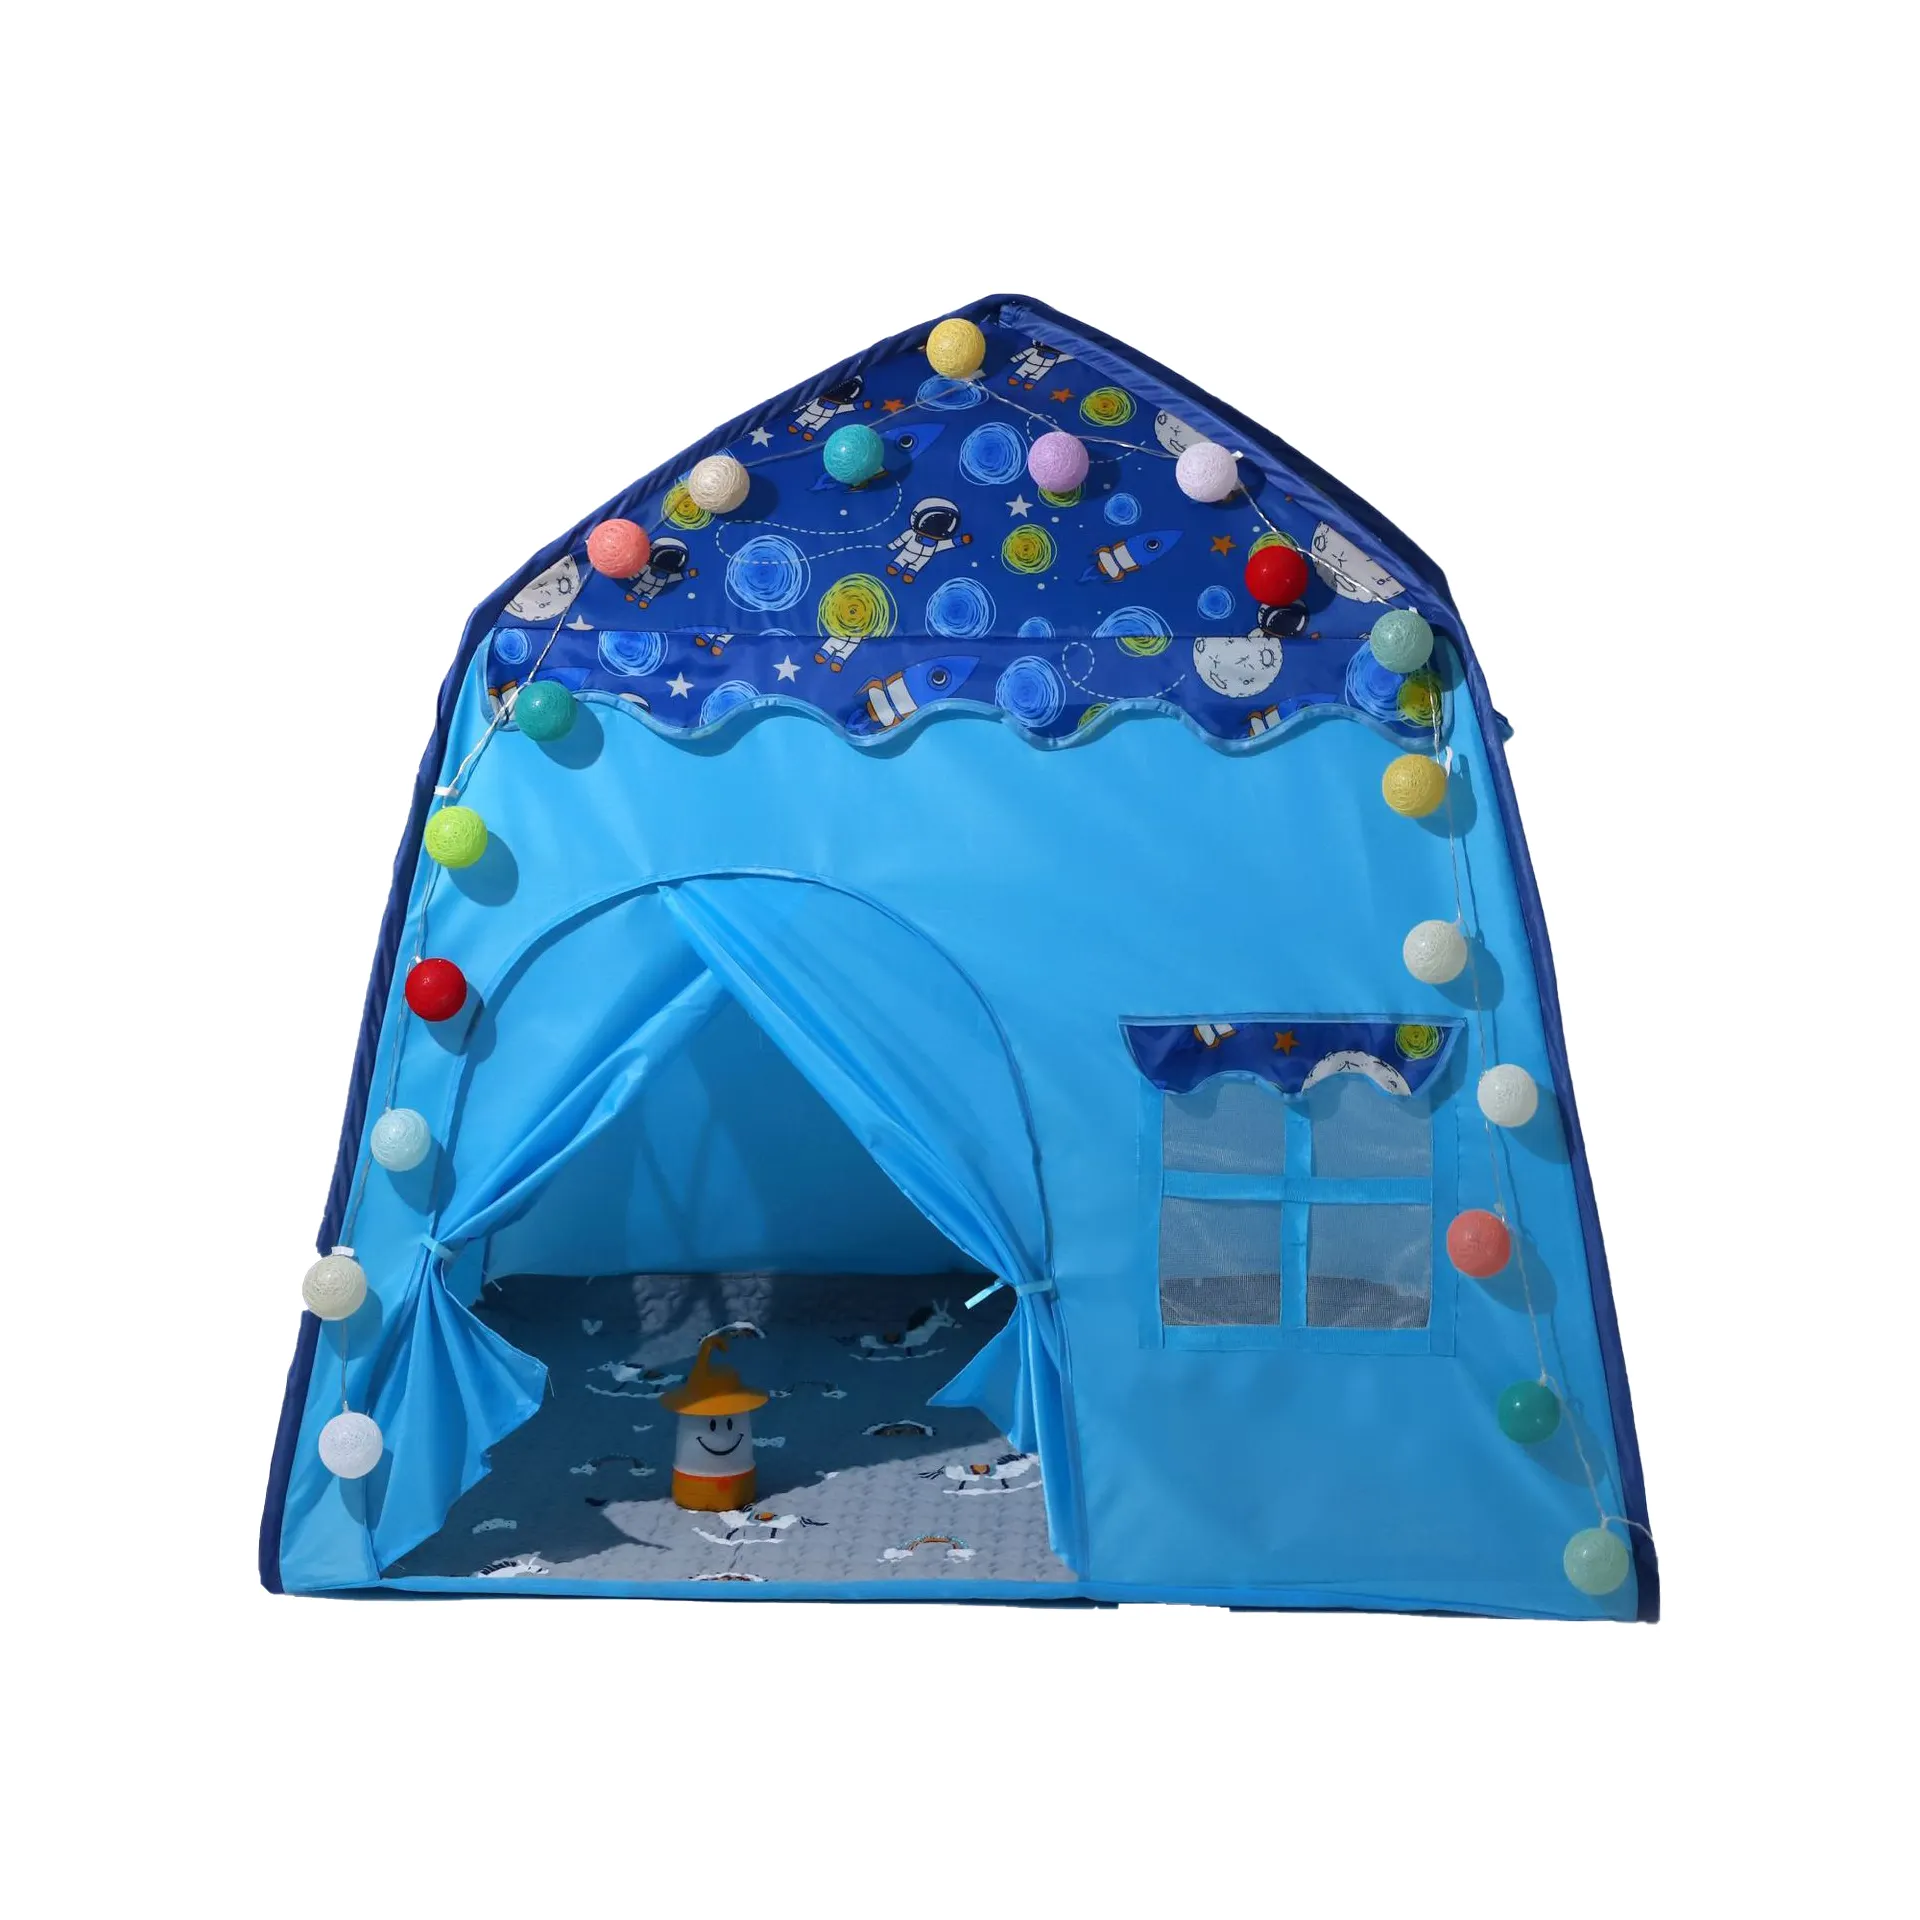 خيمة أطفال داخلية ماركة سياميند للبنات الأميرات منزل للنوم منزل لعب للأطفال بيت قصور سرير صغير